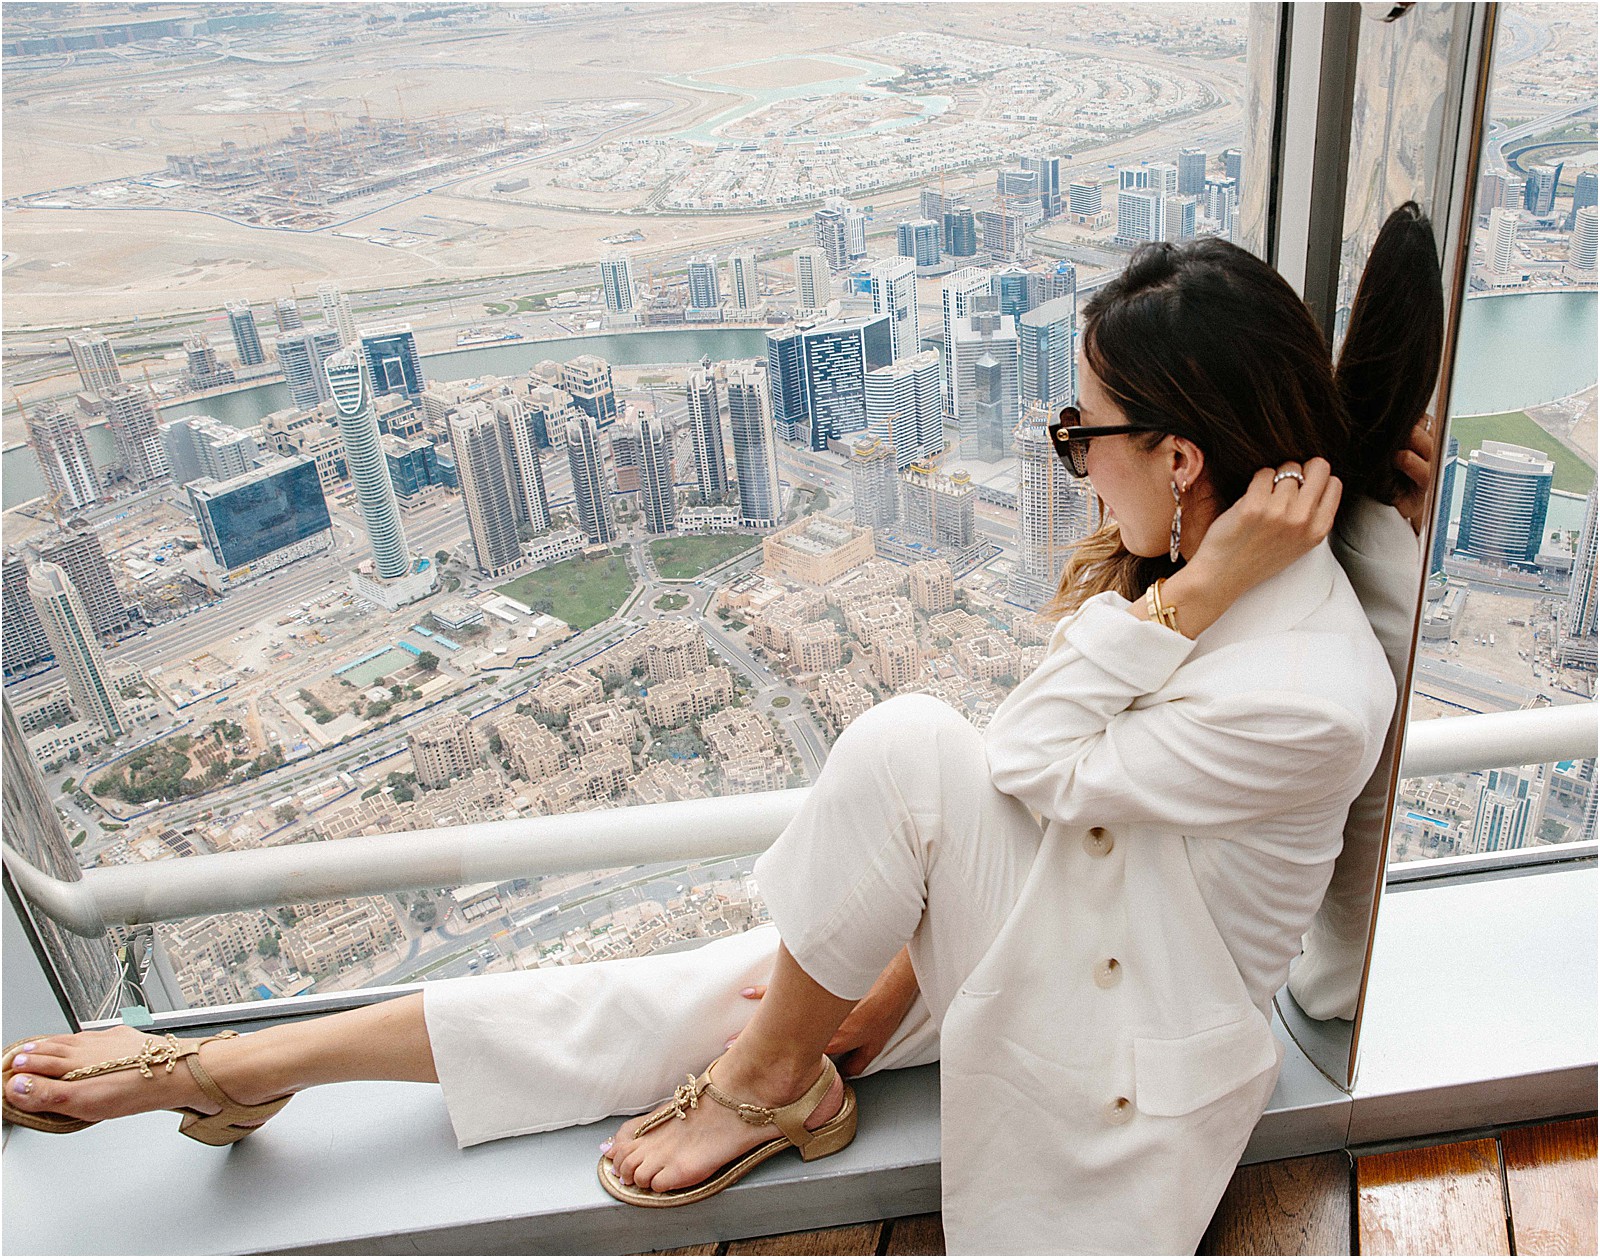 Dubai burj khalifa poses